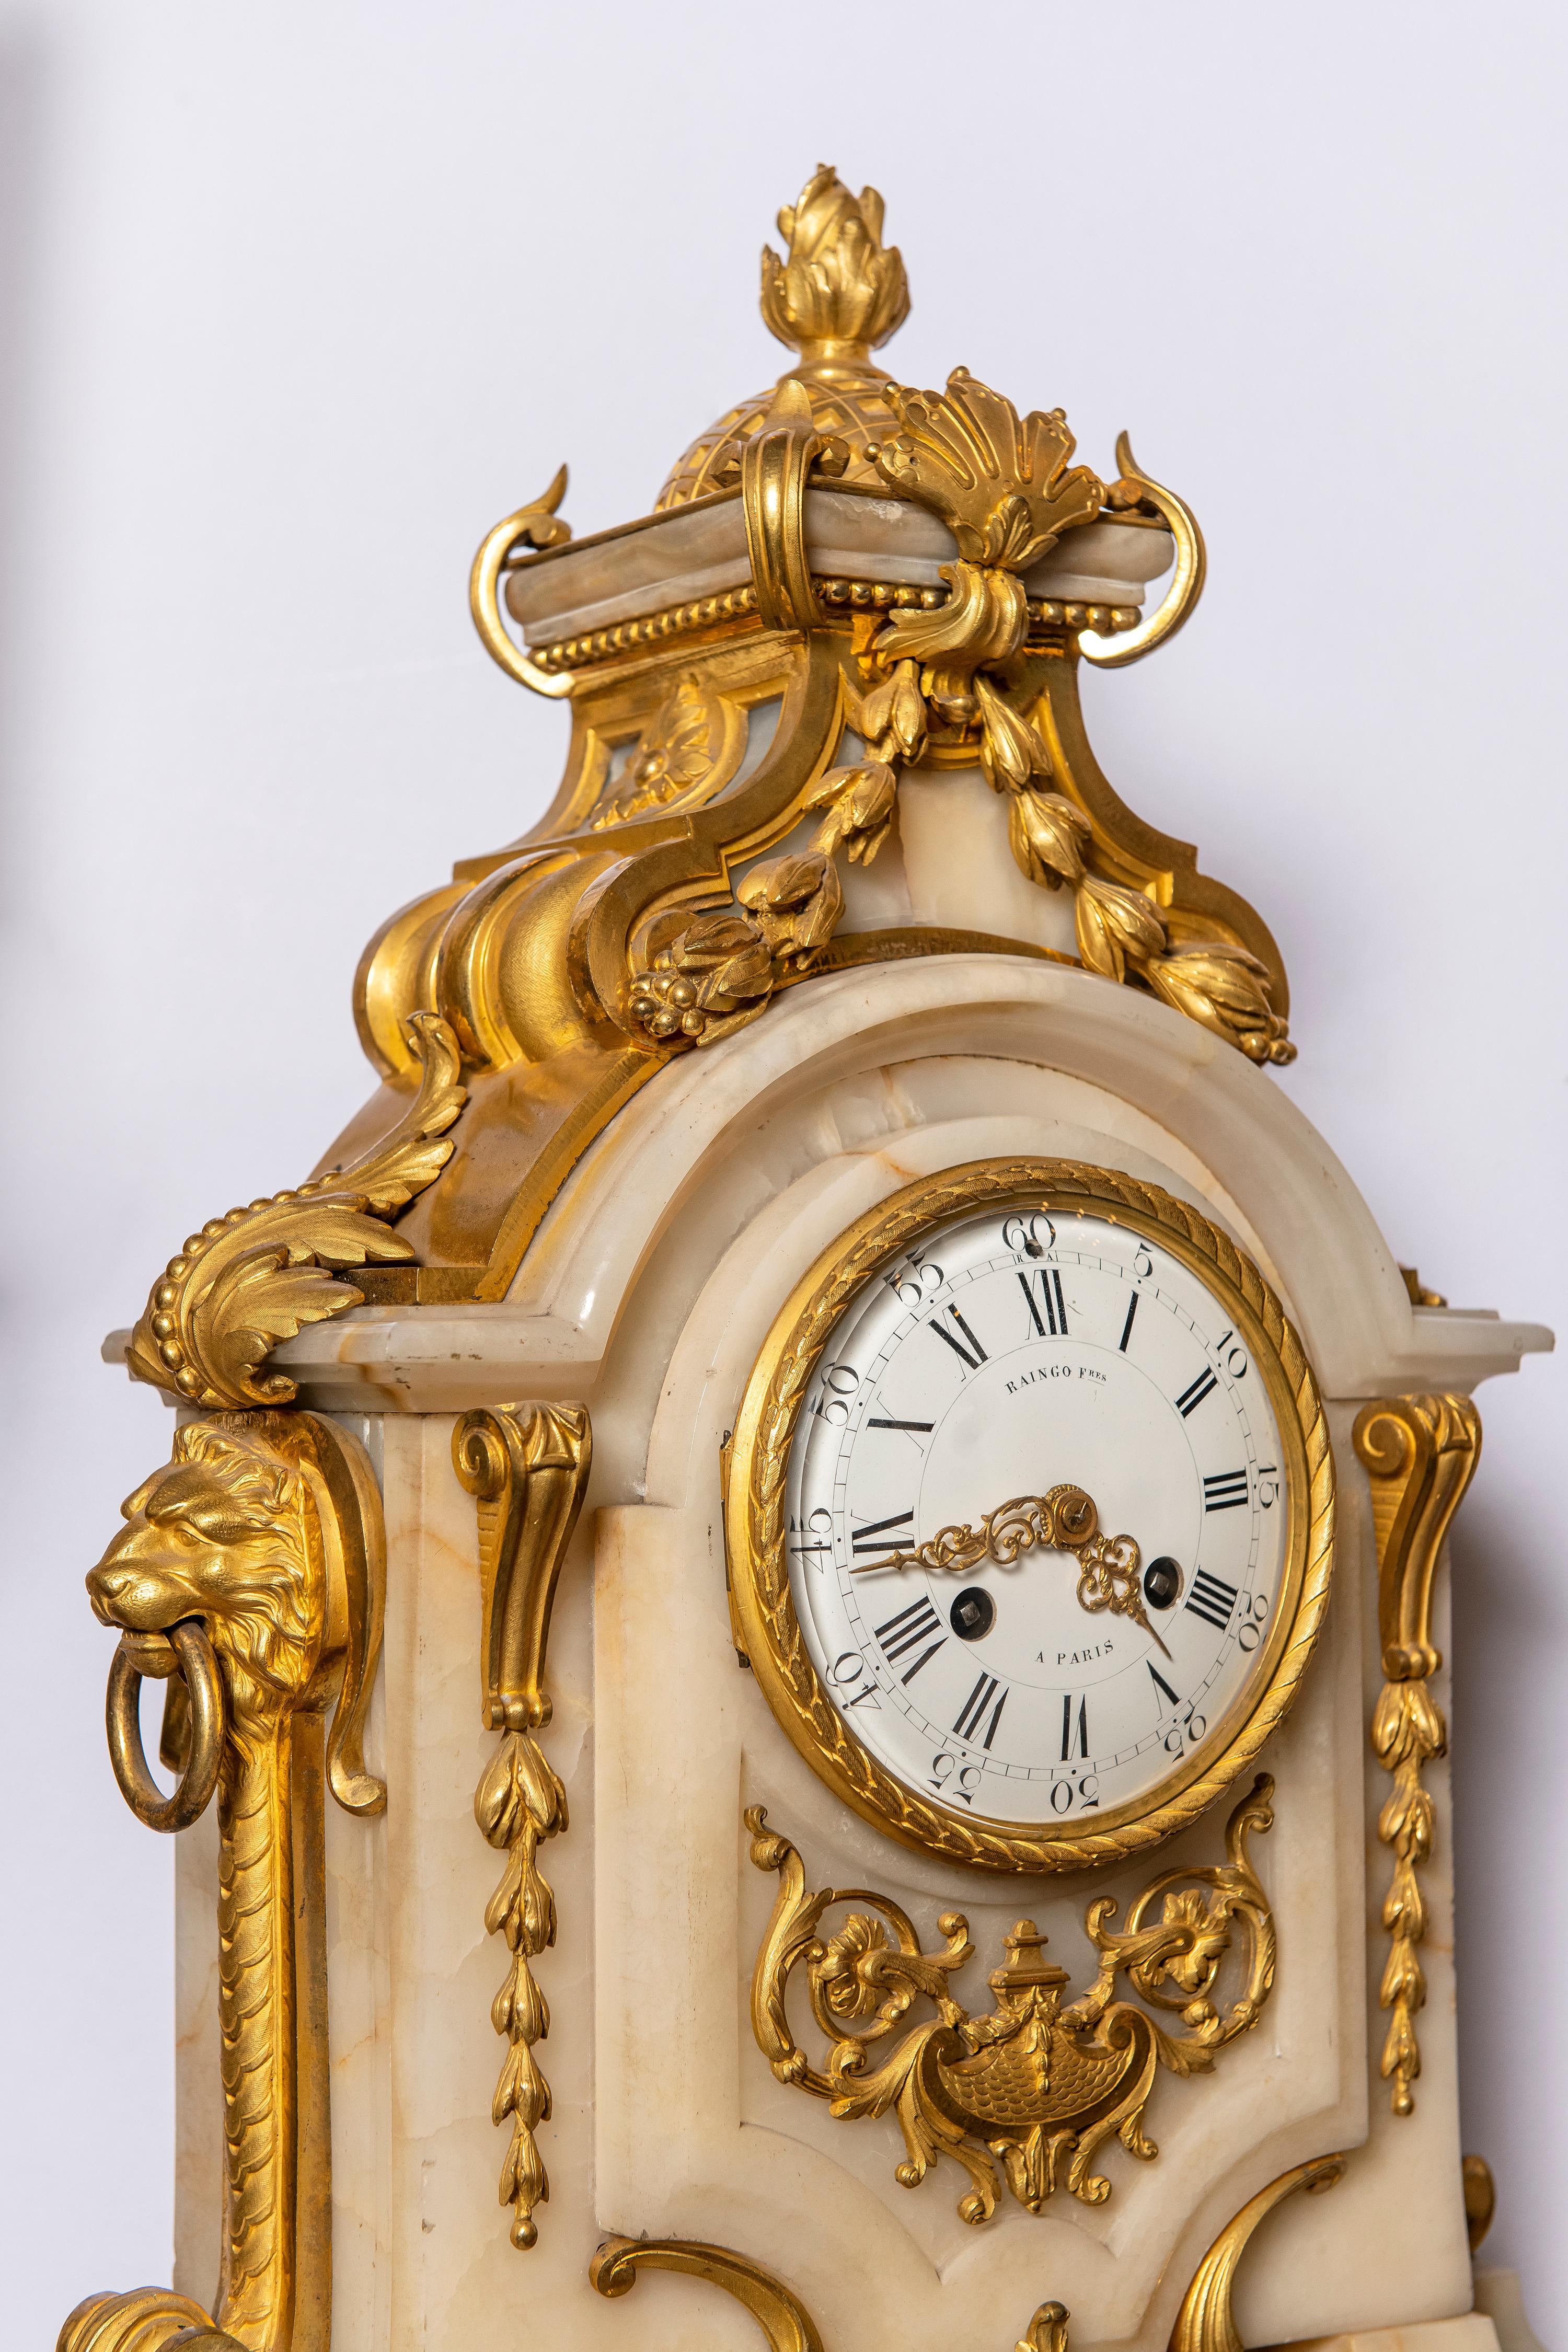 Vergoldete Bronze und Marmor dreiteilige Uhr Garnitur. Uhr signiert Raingo Fres. Frankreich, 19. Jahrhundert.
Die Uhr läuft.

Abmessungen der Uhr: 71 cm Höhe, 46 cm Breite, 22 cm Tiefe.
Abmessungen der Kandelaber: 76 cm Höhe, 39 cm Breite, 25 cm